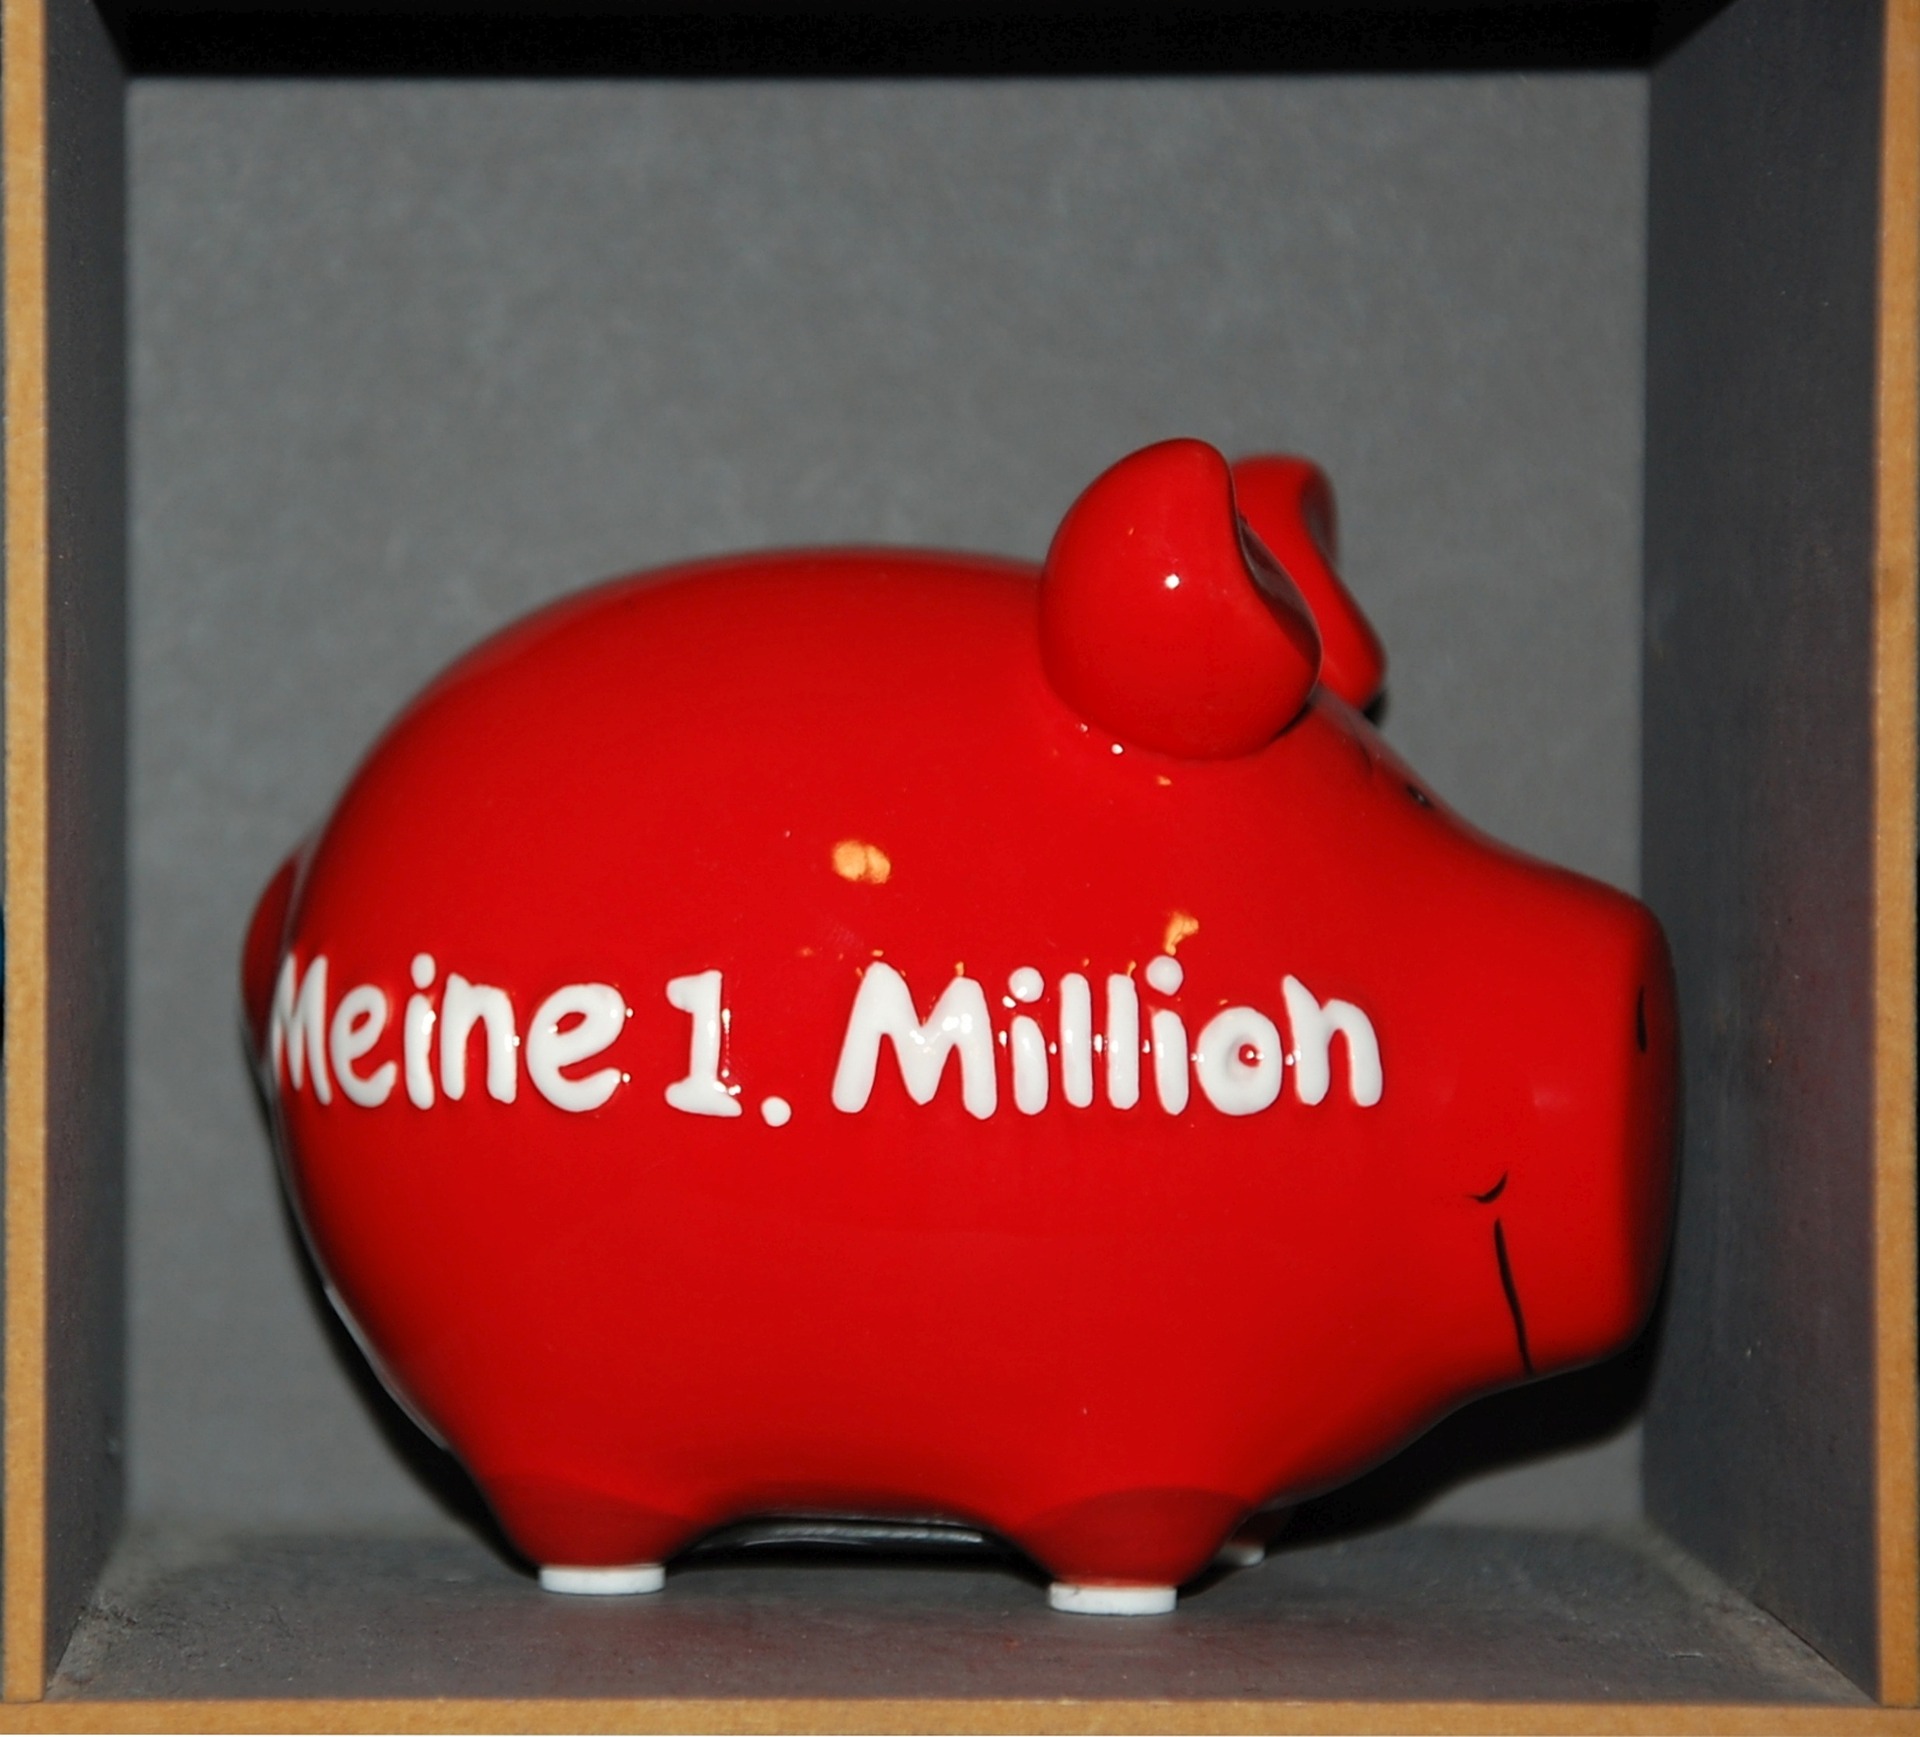 Rotes Sparschwein mit der Aufschrift "meine 1. Million" - gehört nicht zu den Unausweichlichen der Unternehmensfinanzen